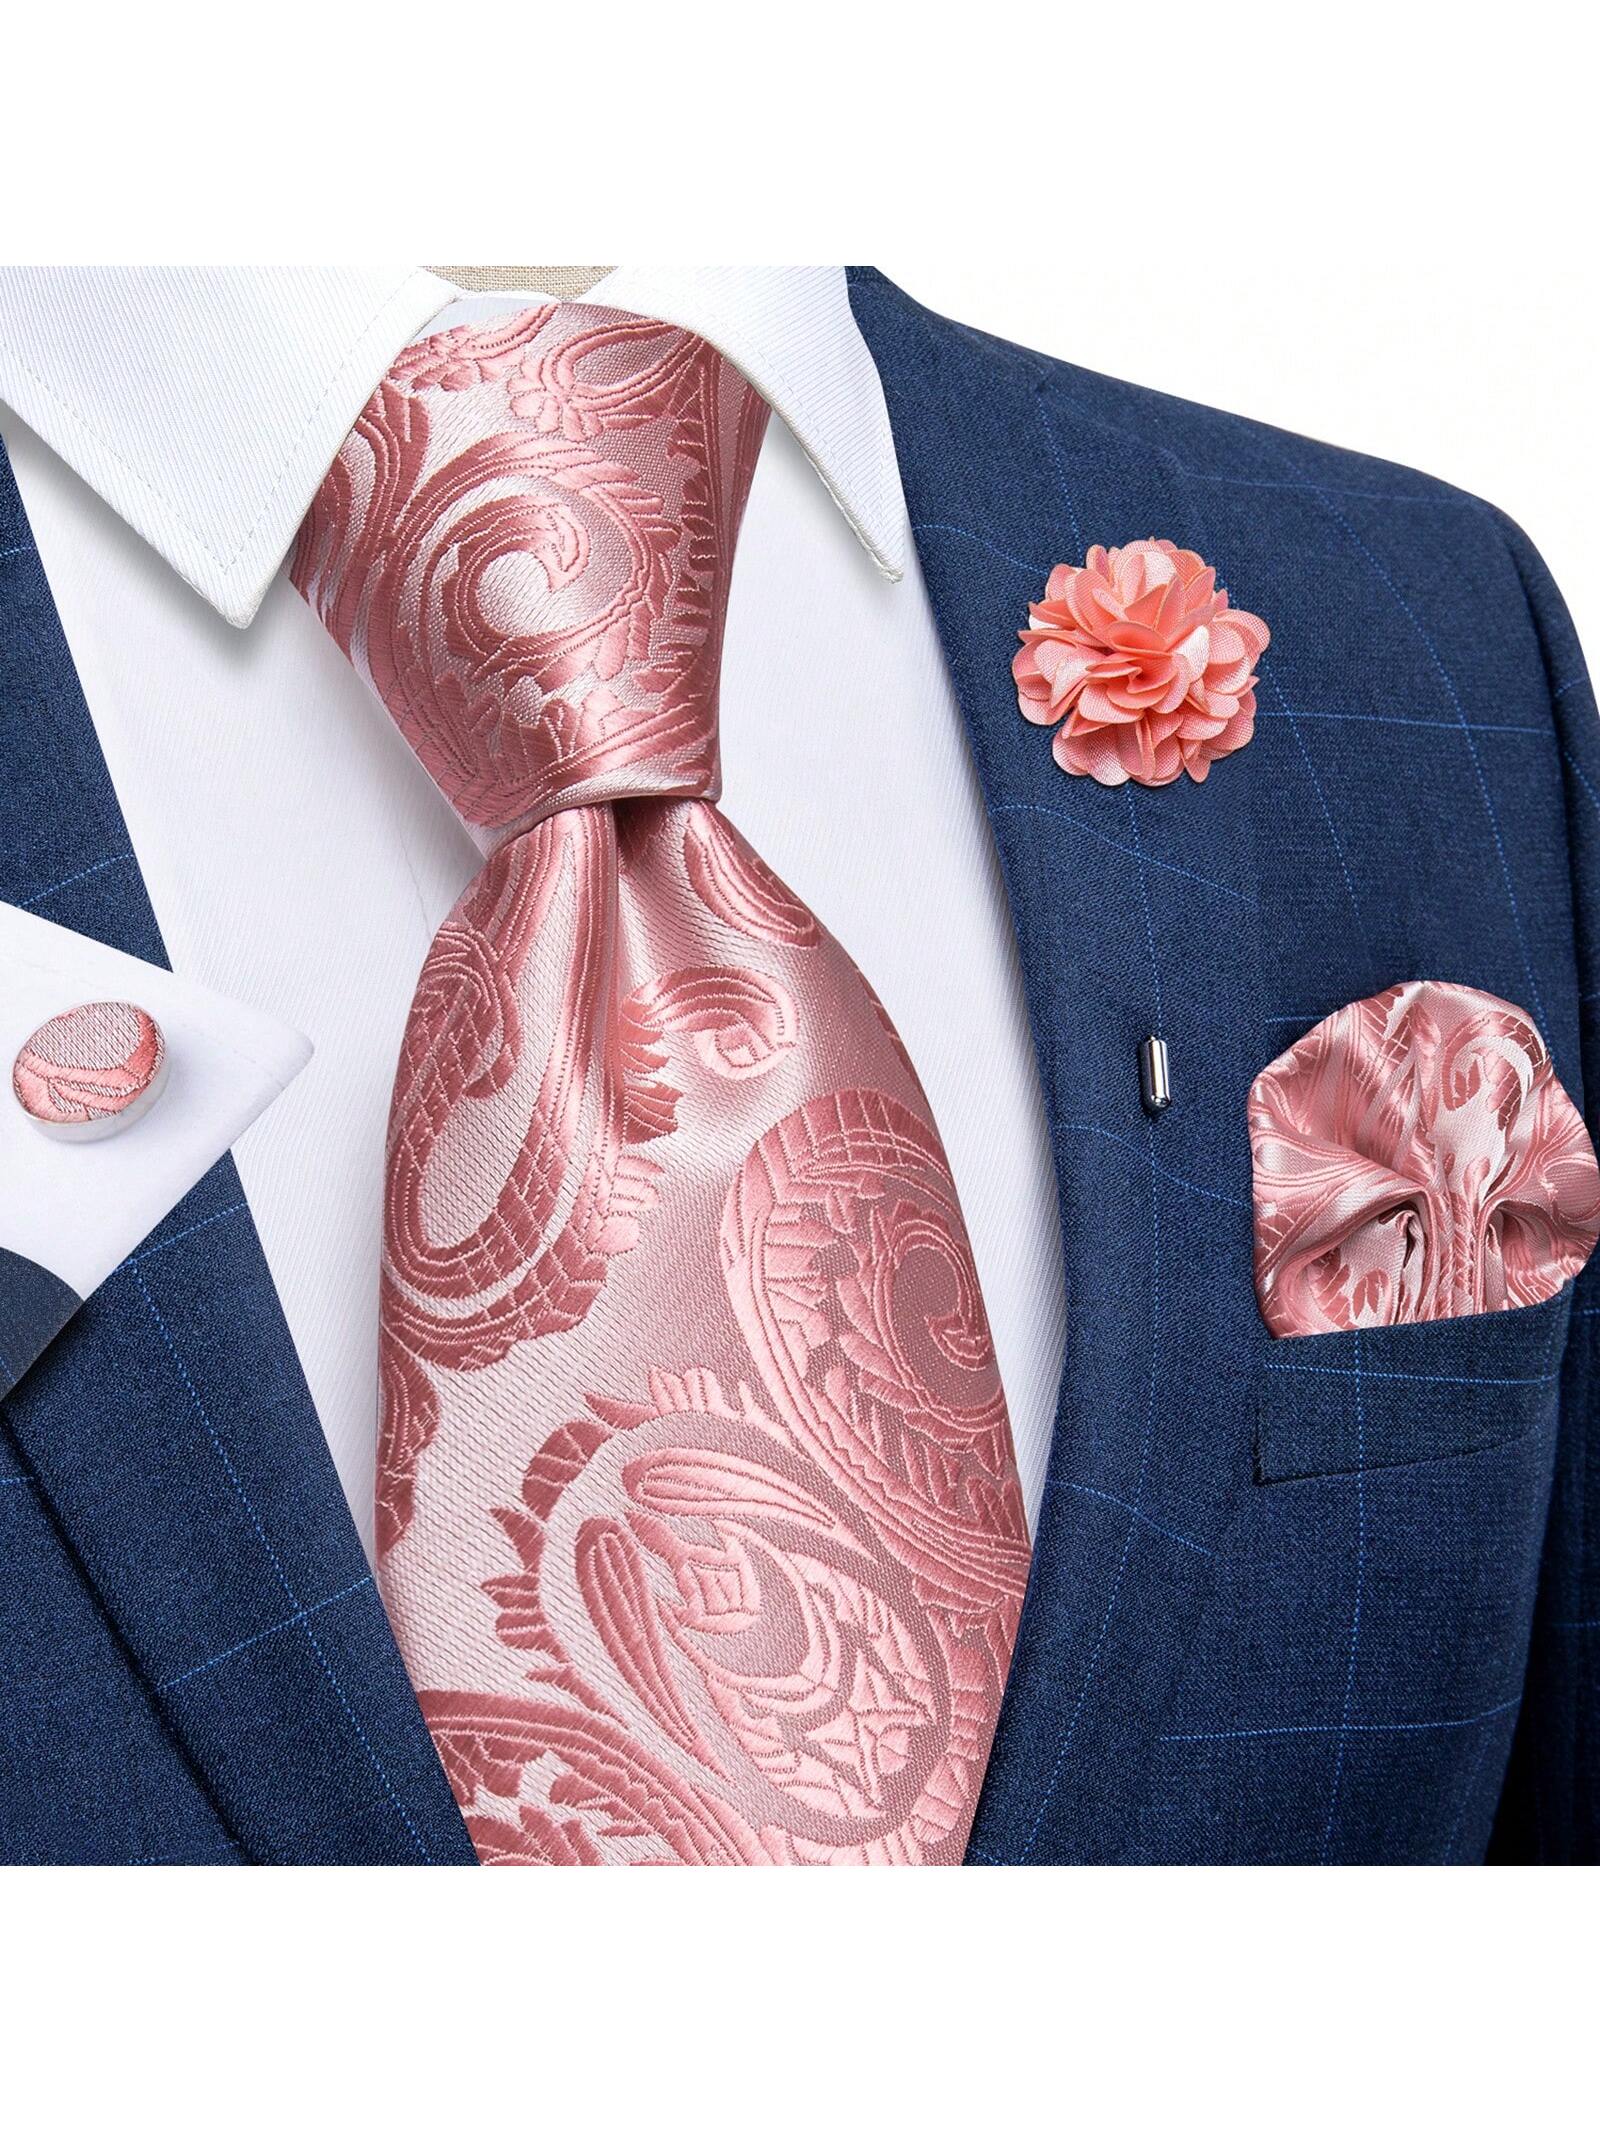 DiBanGu мужские галстуки, розовый подарочная упаковка мужской брендовый роскошный галстук свадебный квадратный карманный мужские галстуки шелковый галстук набор запоно